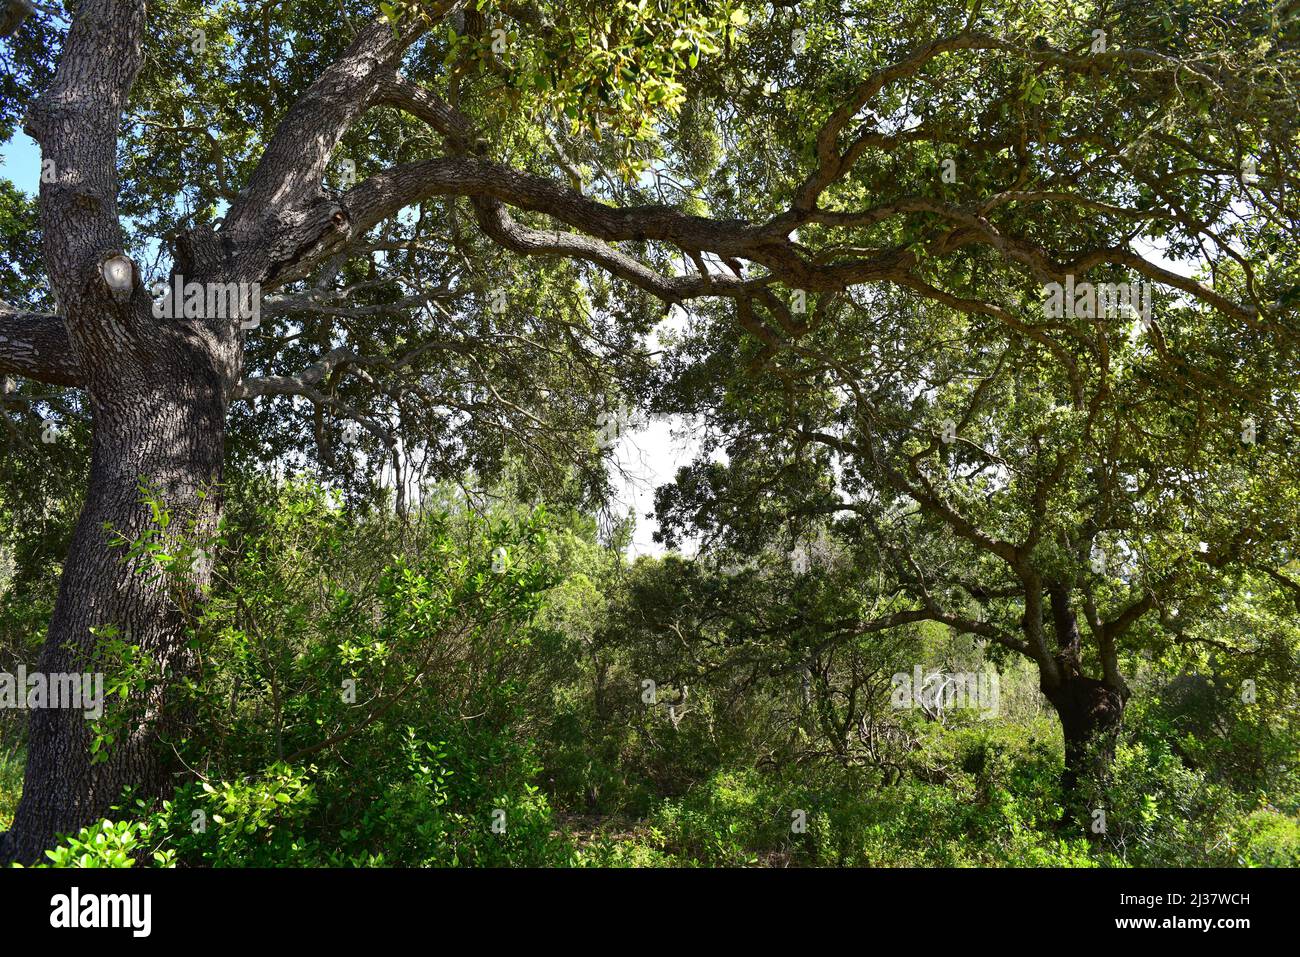 El roble perenne (Quercus ilex ilex) es un árbol perenne nativo del sur de Europa. Esta foto fue tomada en Menorca, Islas Baleares, España. Foto de stock